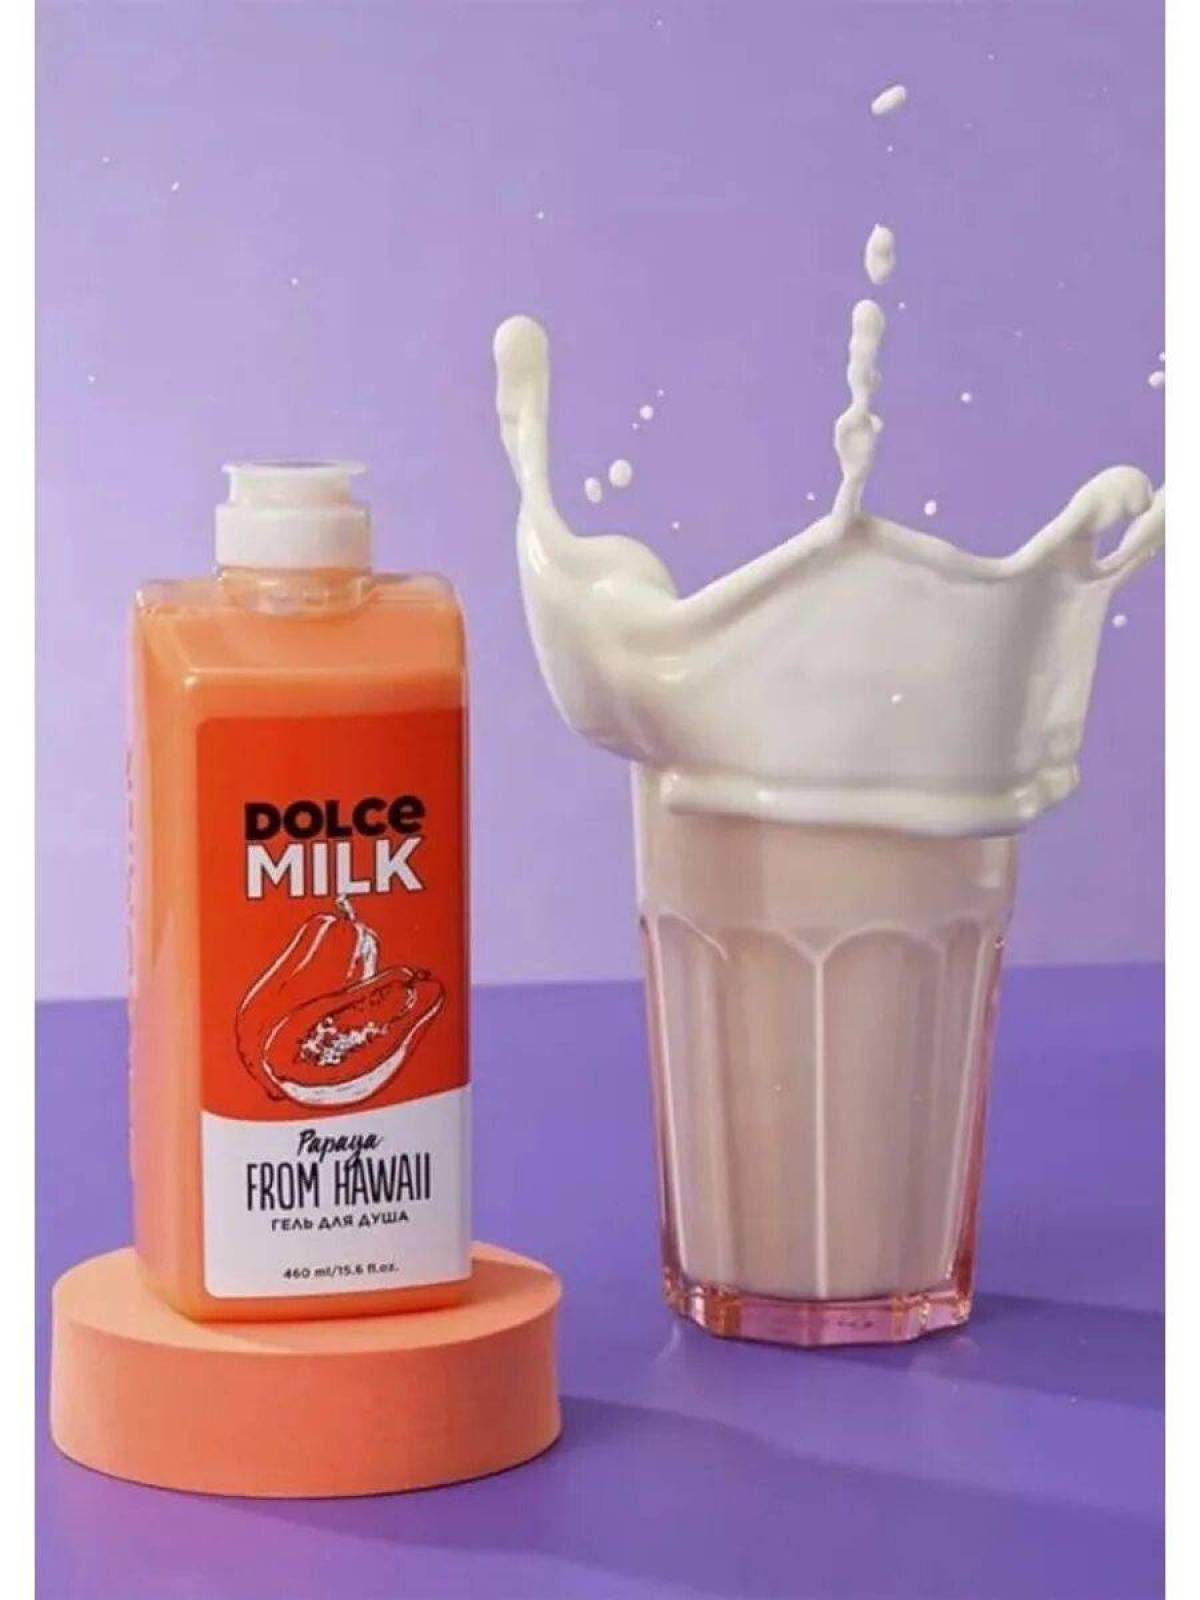 Dolce milk #24